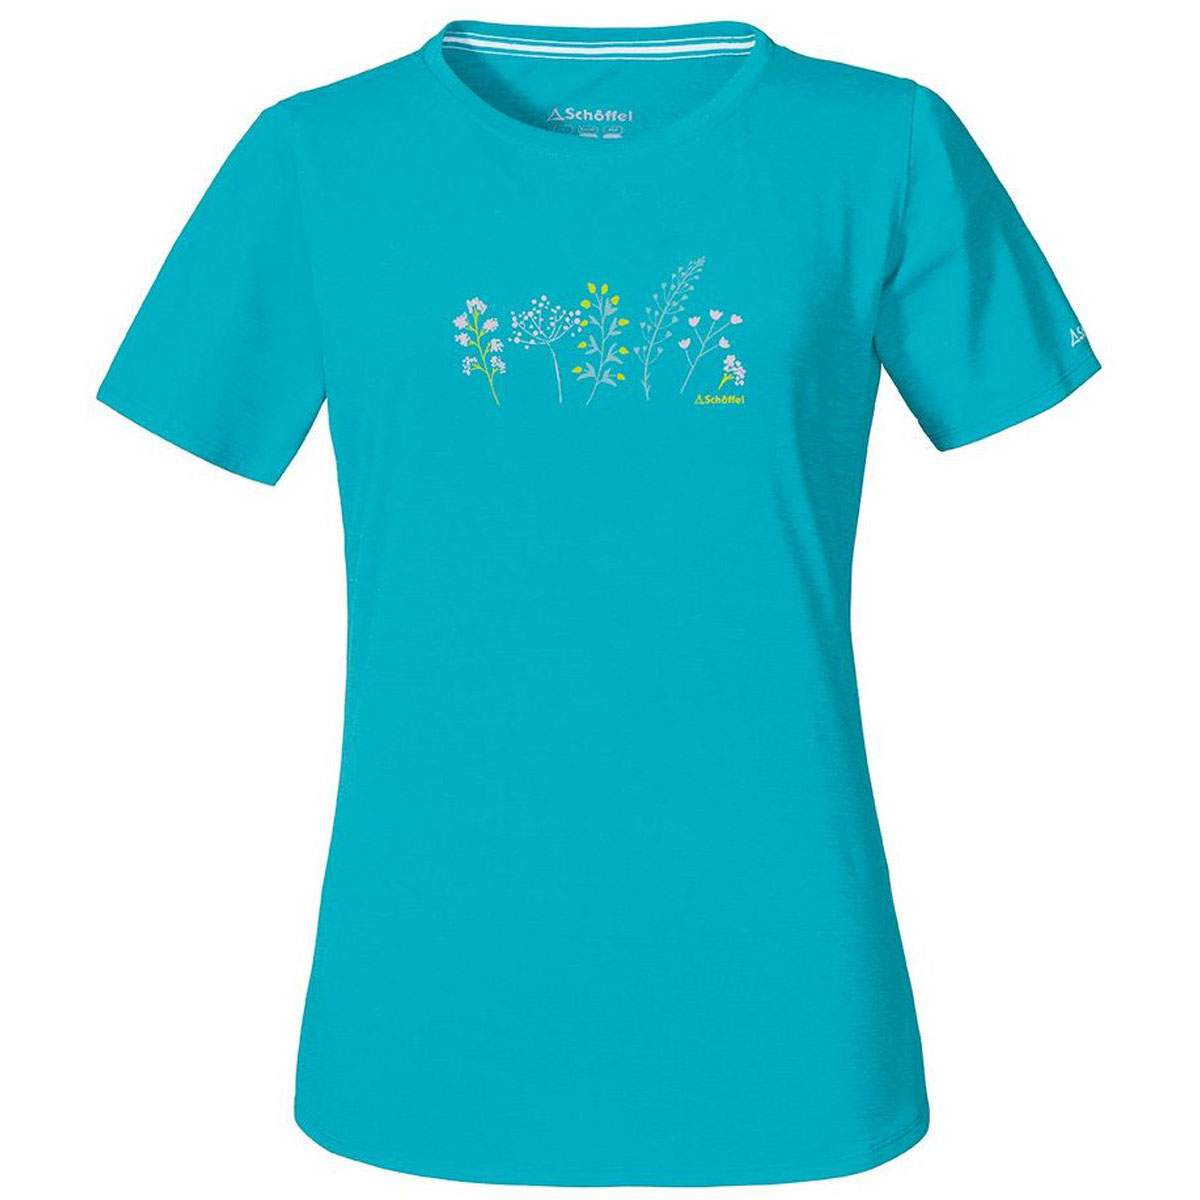 Schöffel T Shirt Swakopmund Damenshirt Freizeitshirt Sportshirt Funktionsshirt 